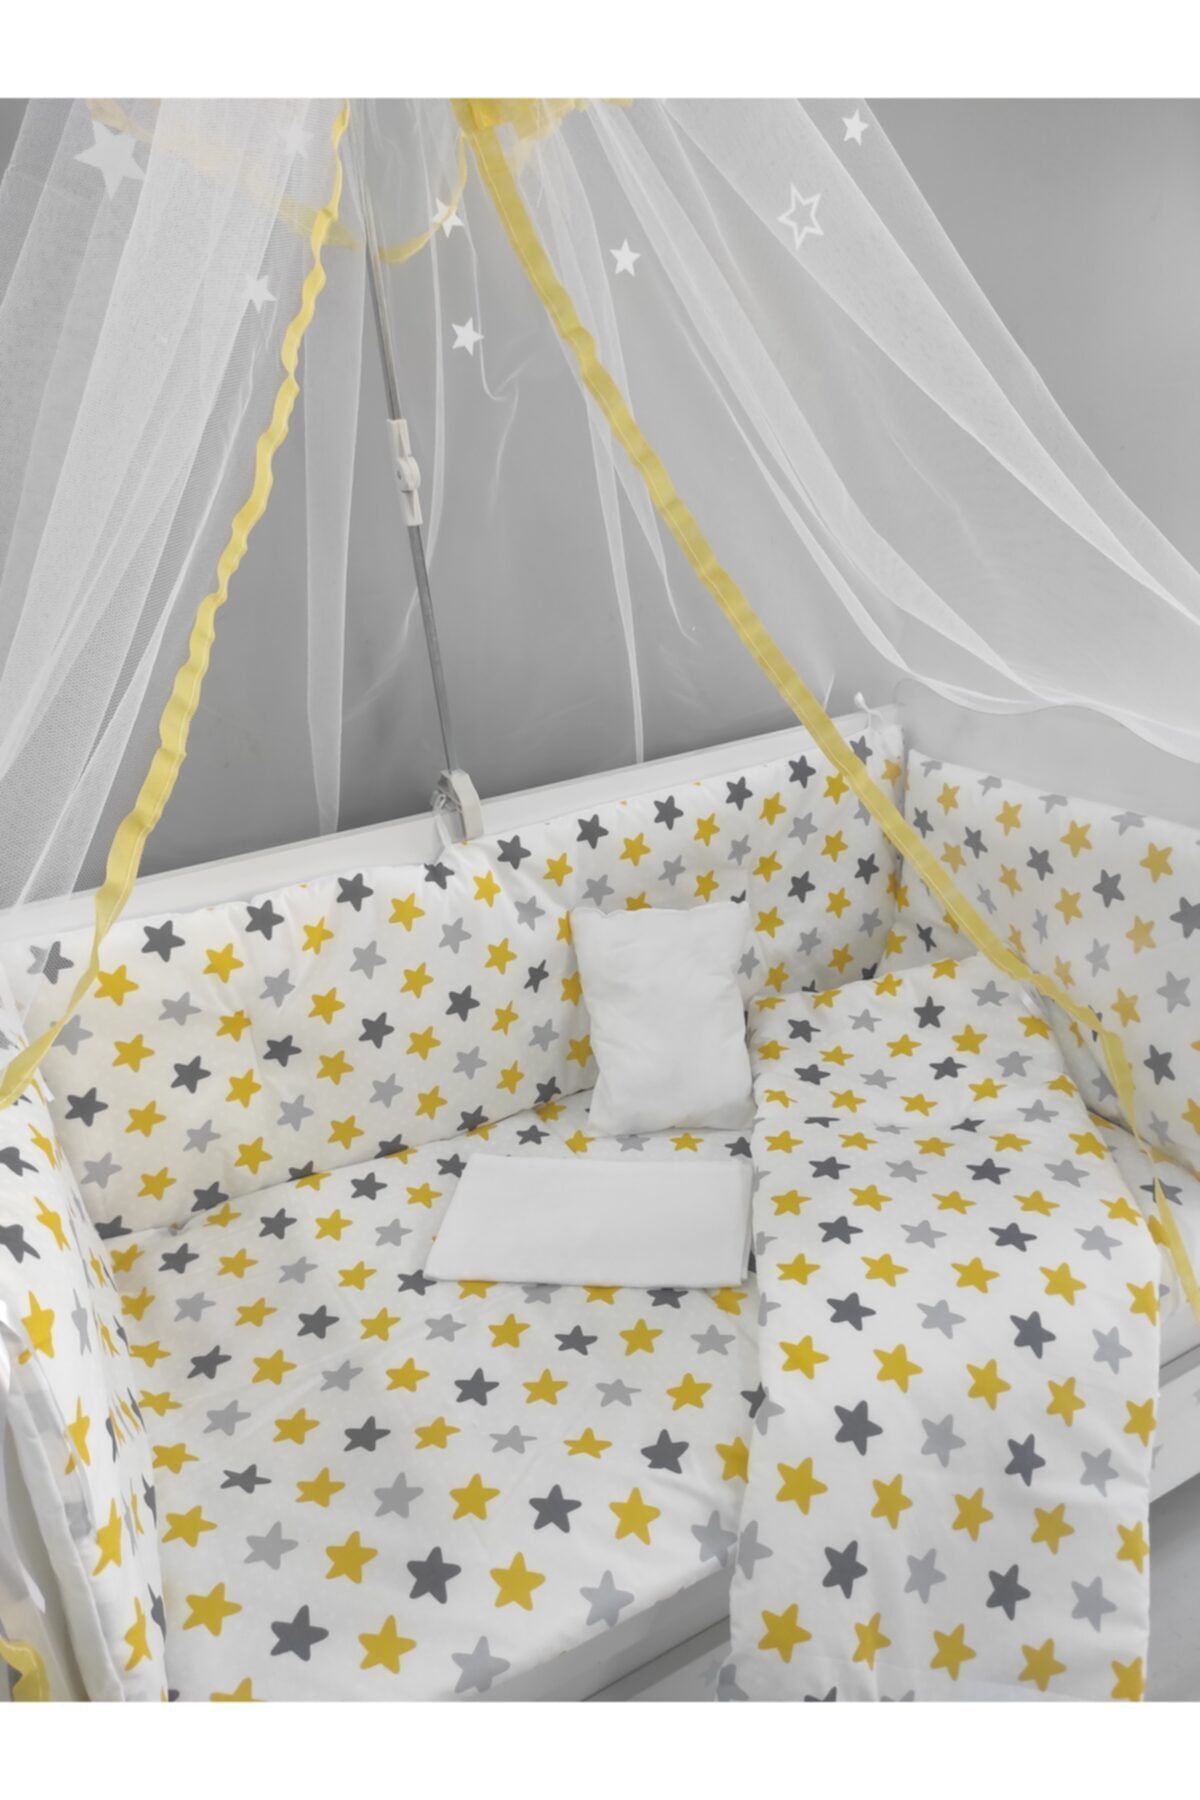 serkan avm Sarı Yıldızlı Bebek Beşik Uyku Seti 60x120 9 Parça Cibinlik Ve Aparat Hediye